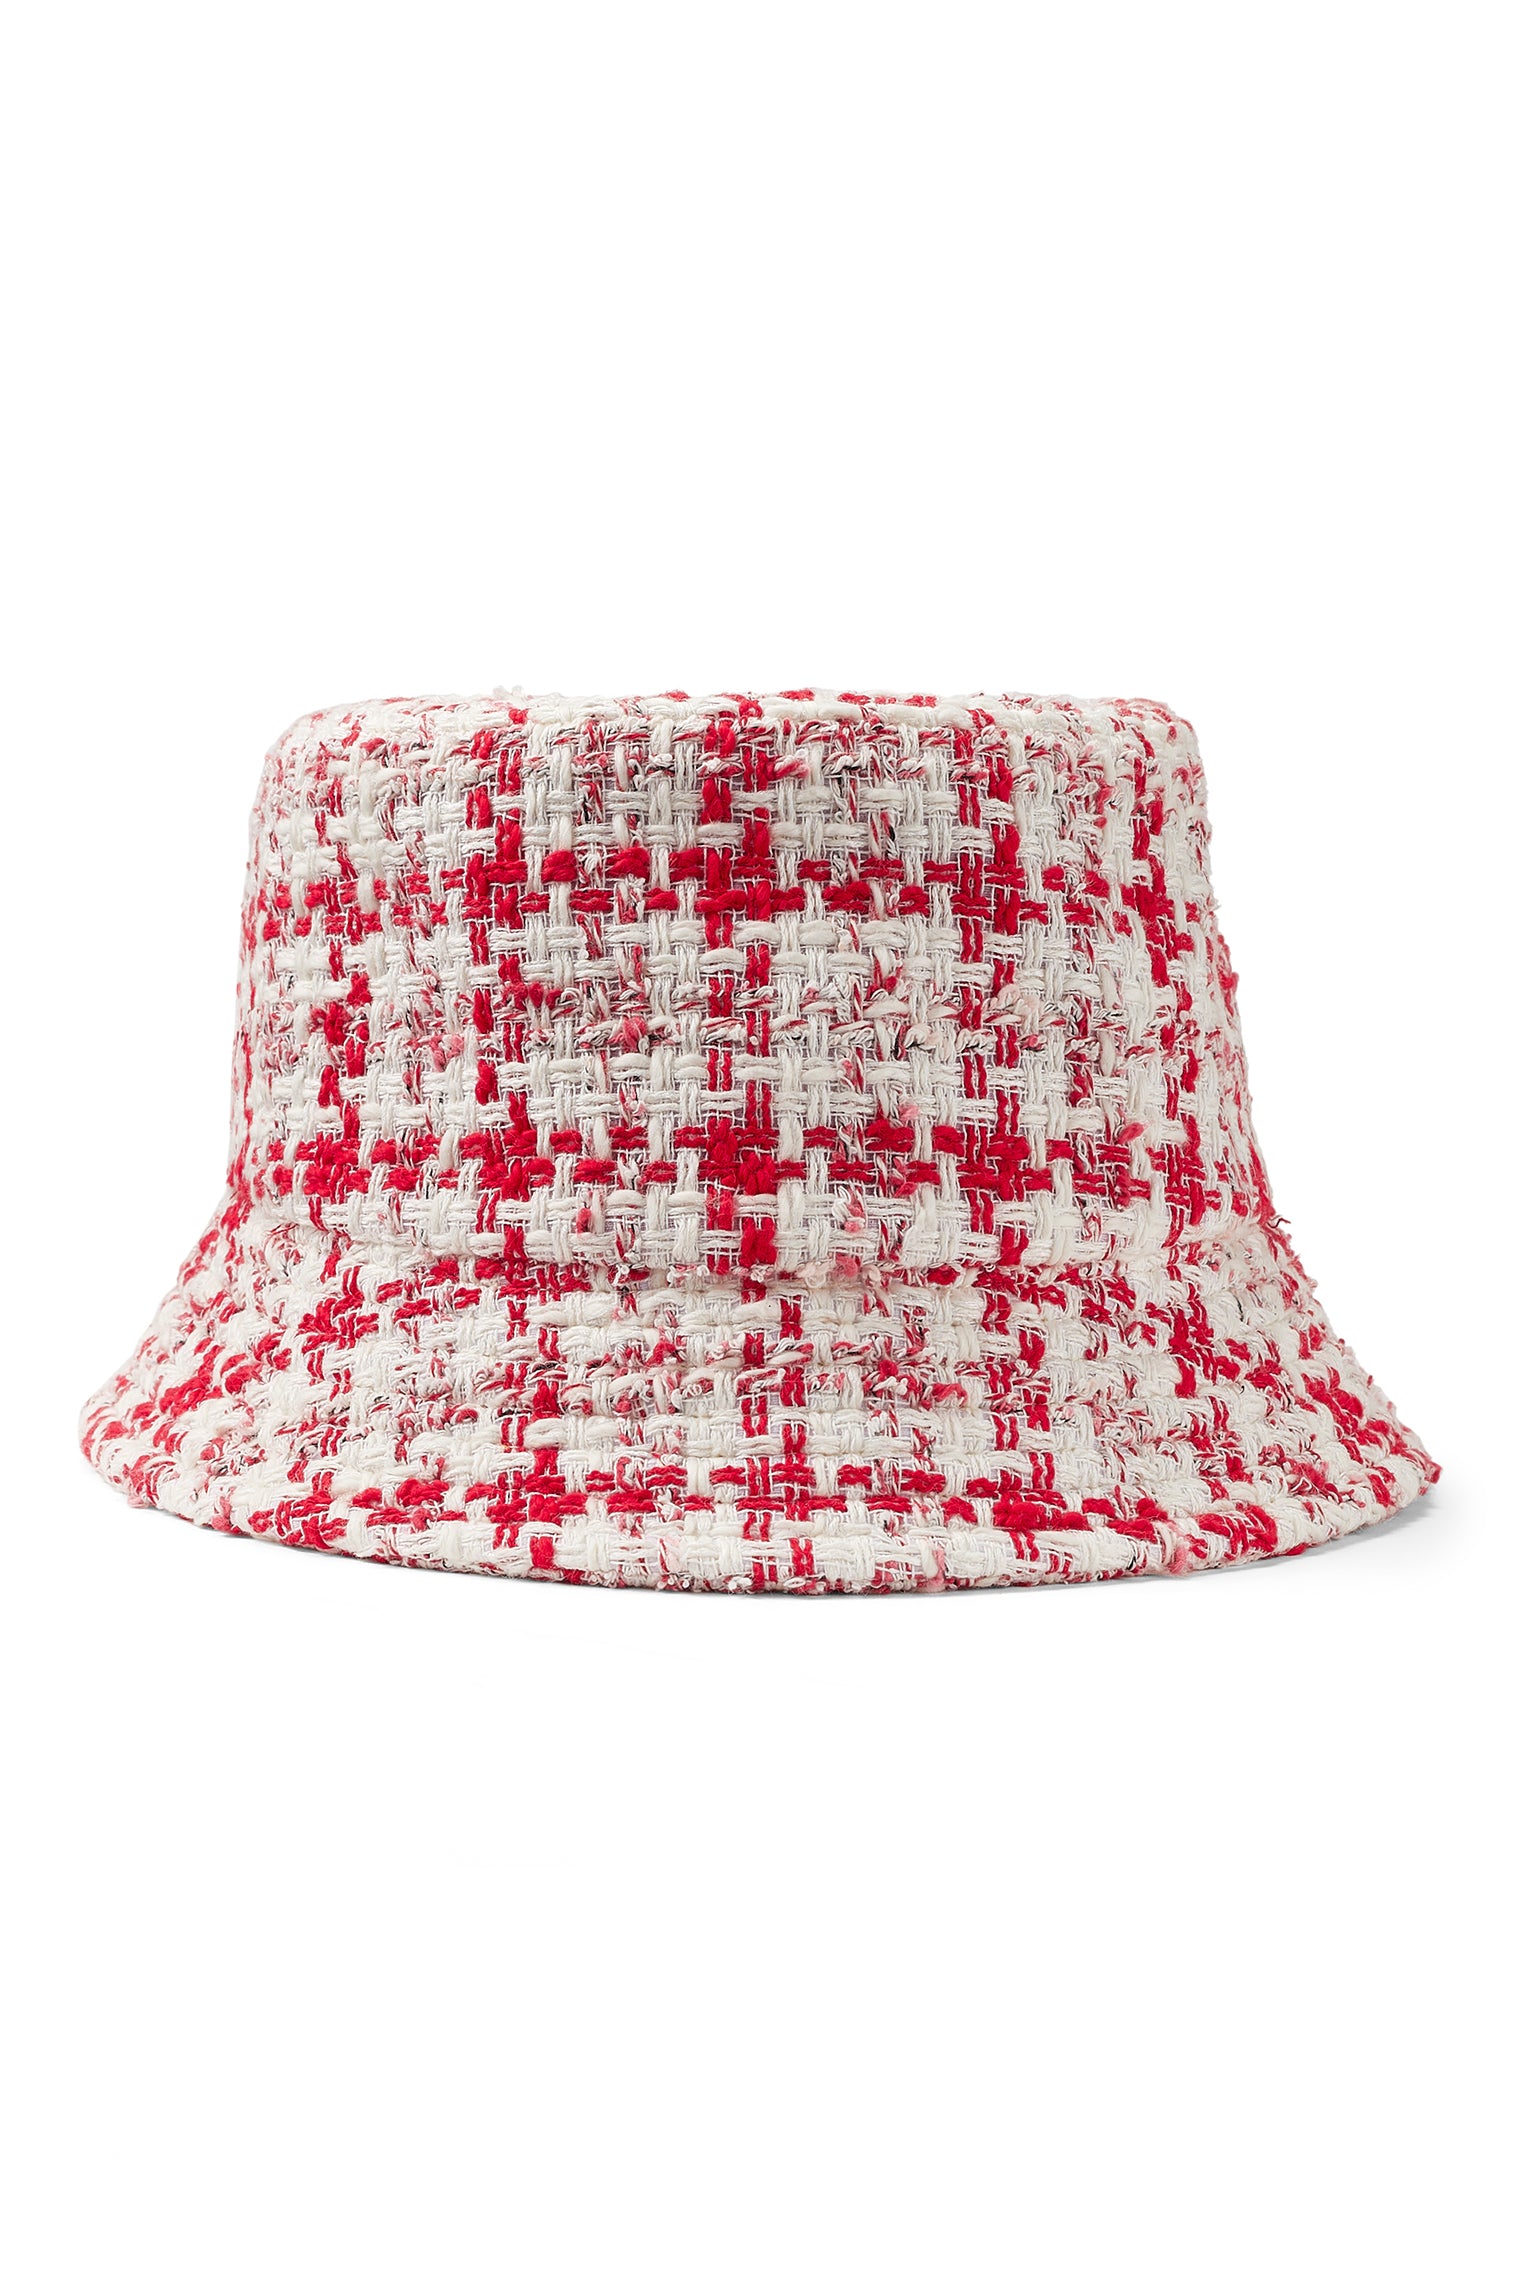 Bucket Hats - Premium Bucket Hats for Men & Women